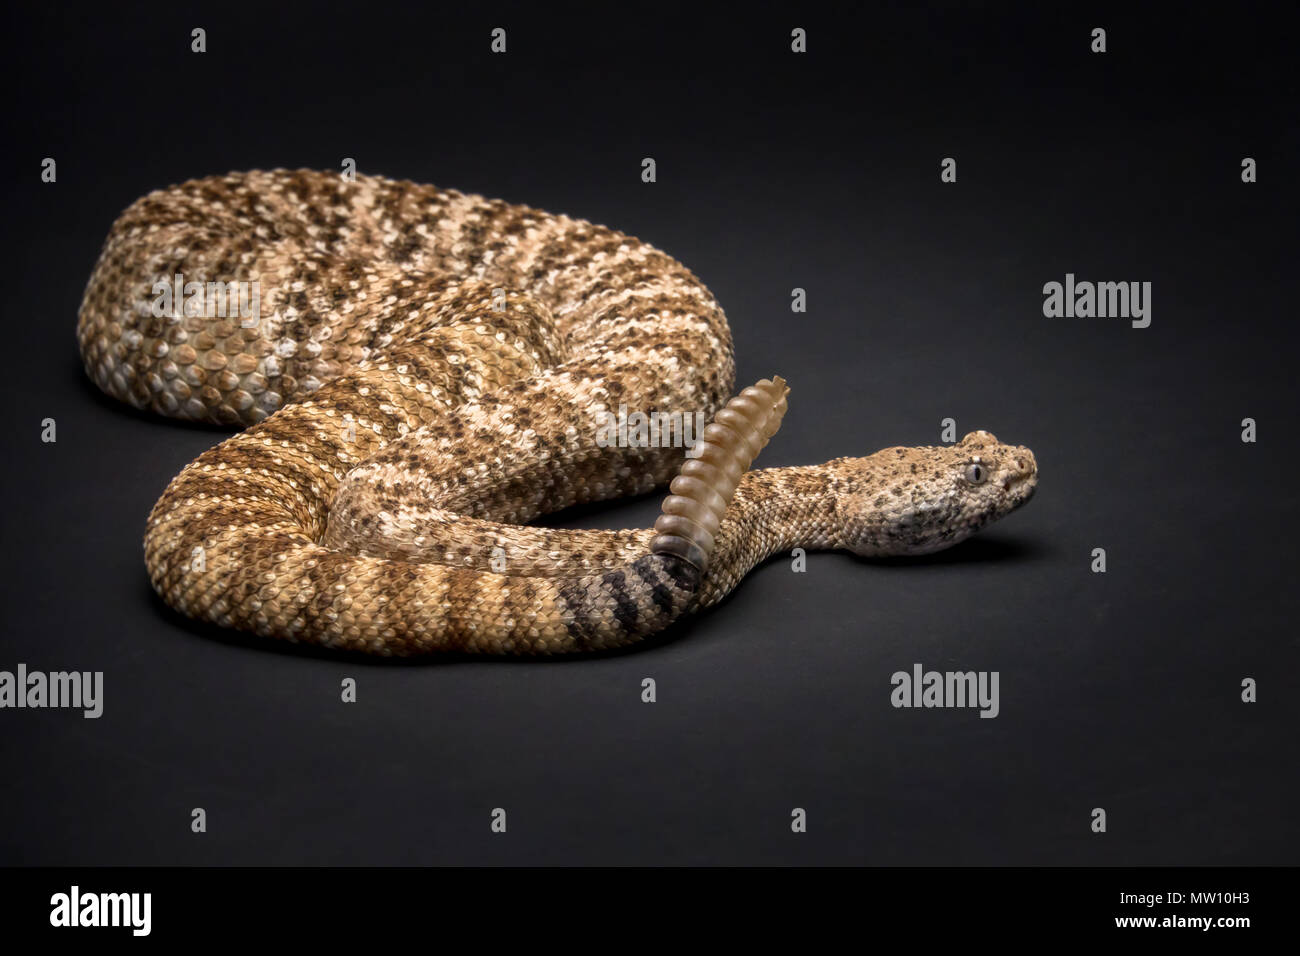 Rattlesnake on Black Background Stock Photo